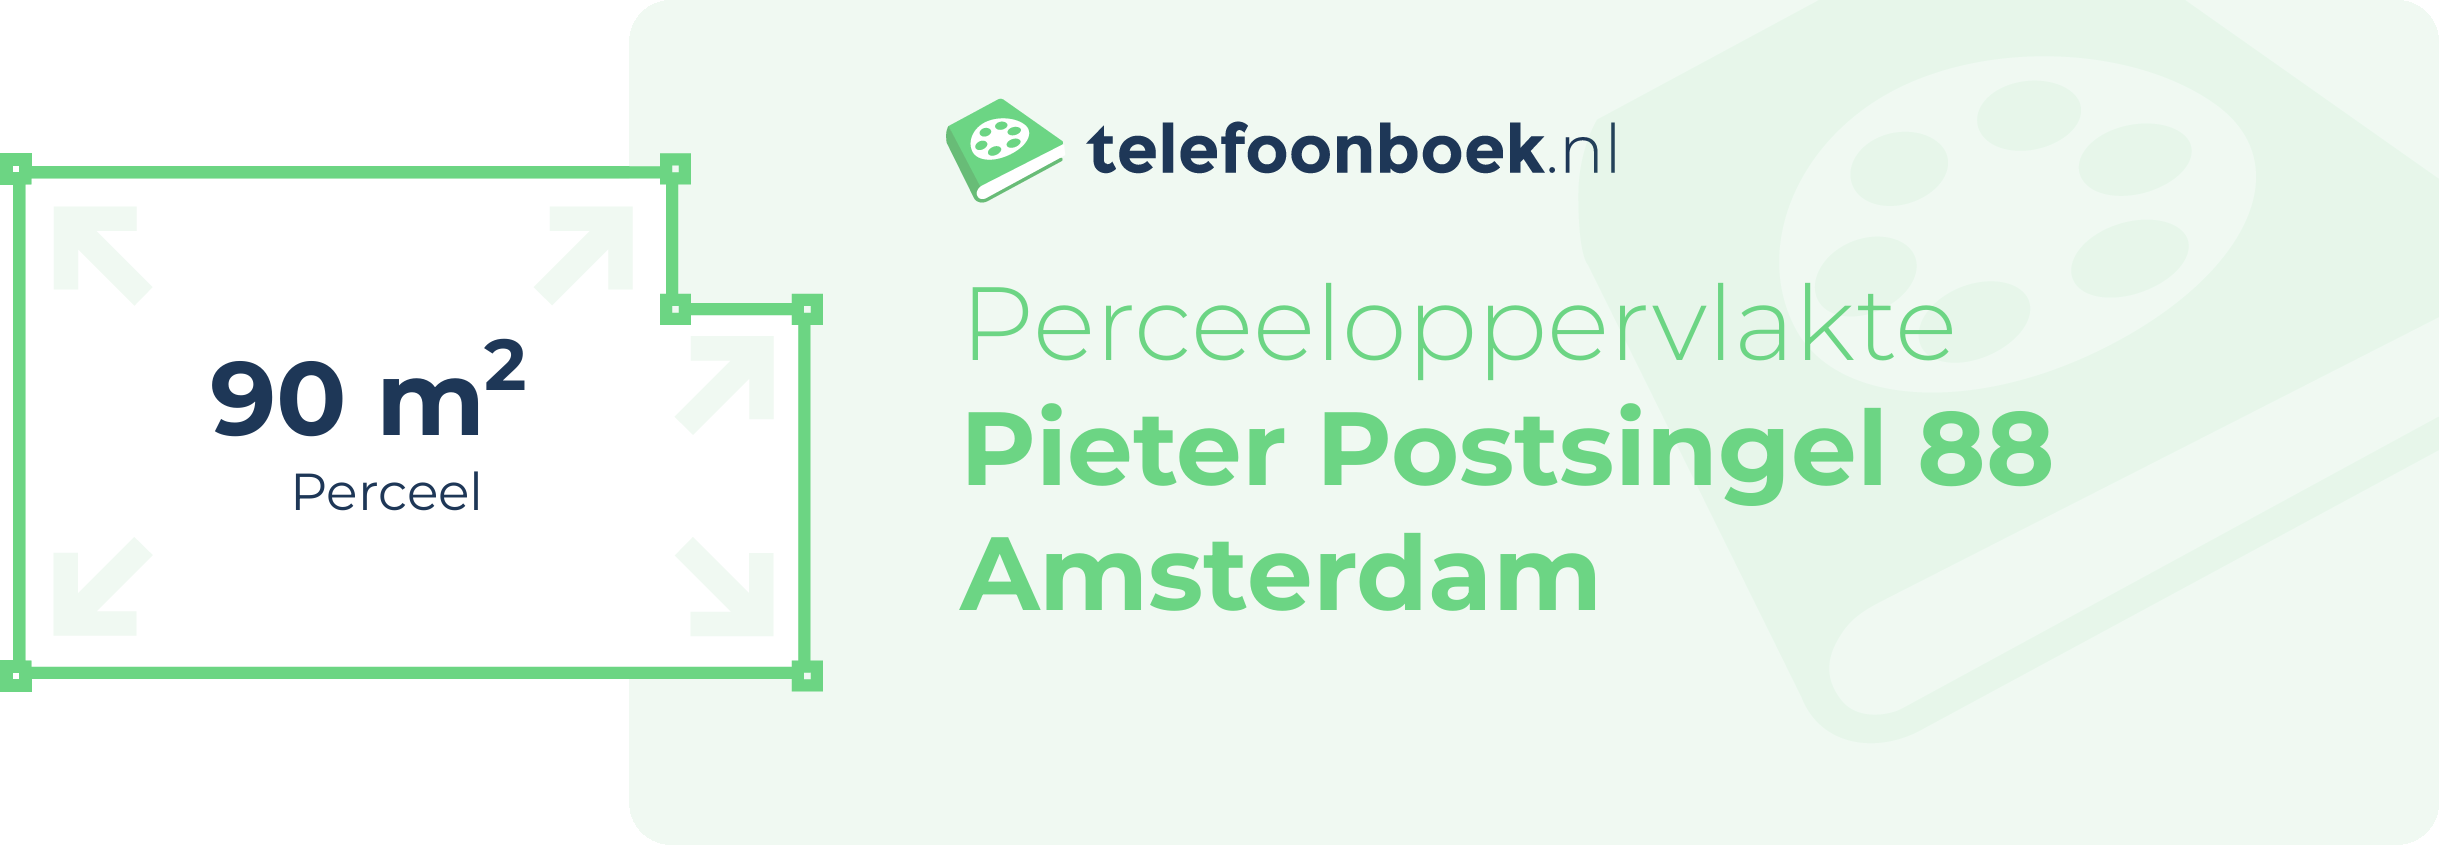 Perceeloppervlakte Pieter Postsingel 88 Amsterdam